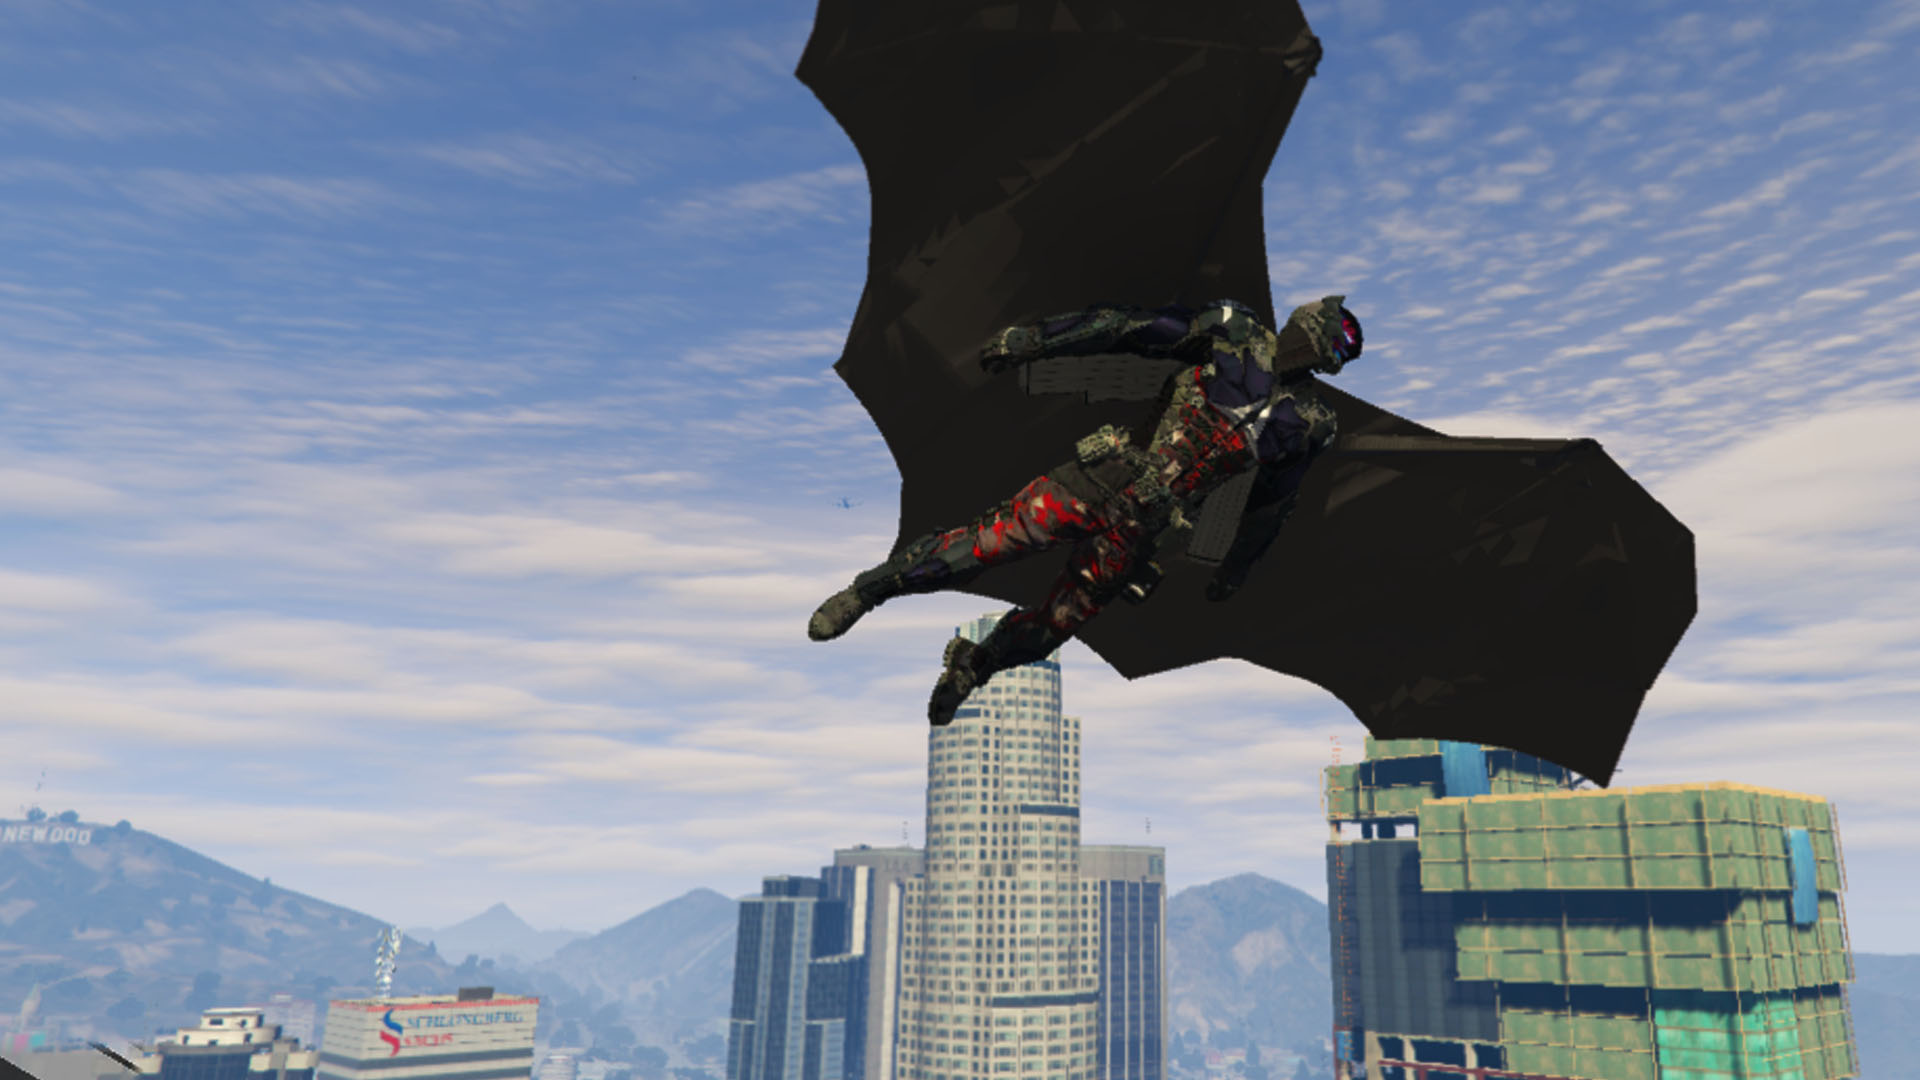 The Bat Flight Suit